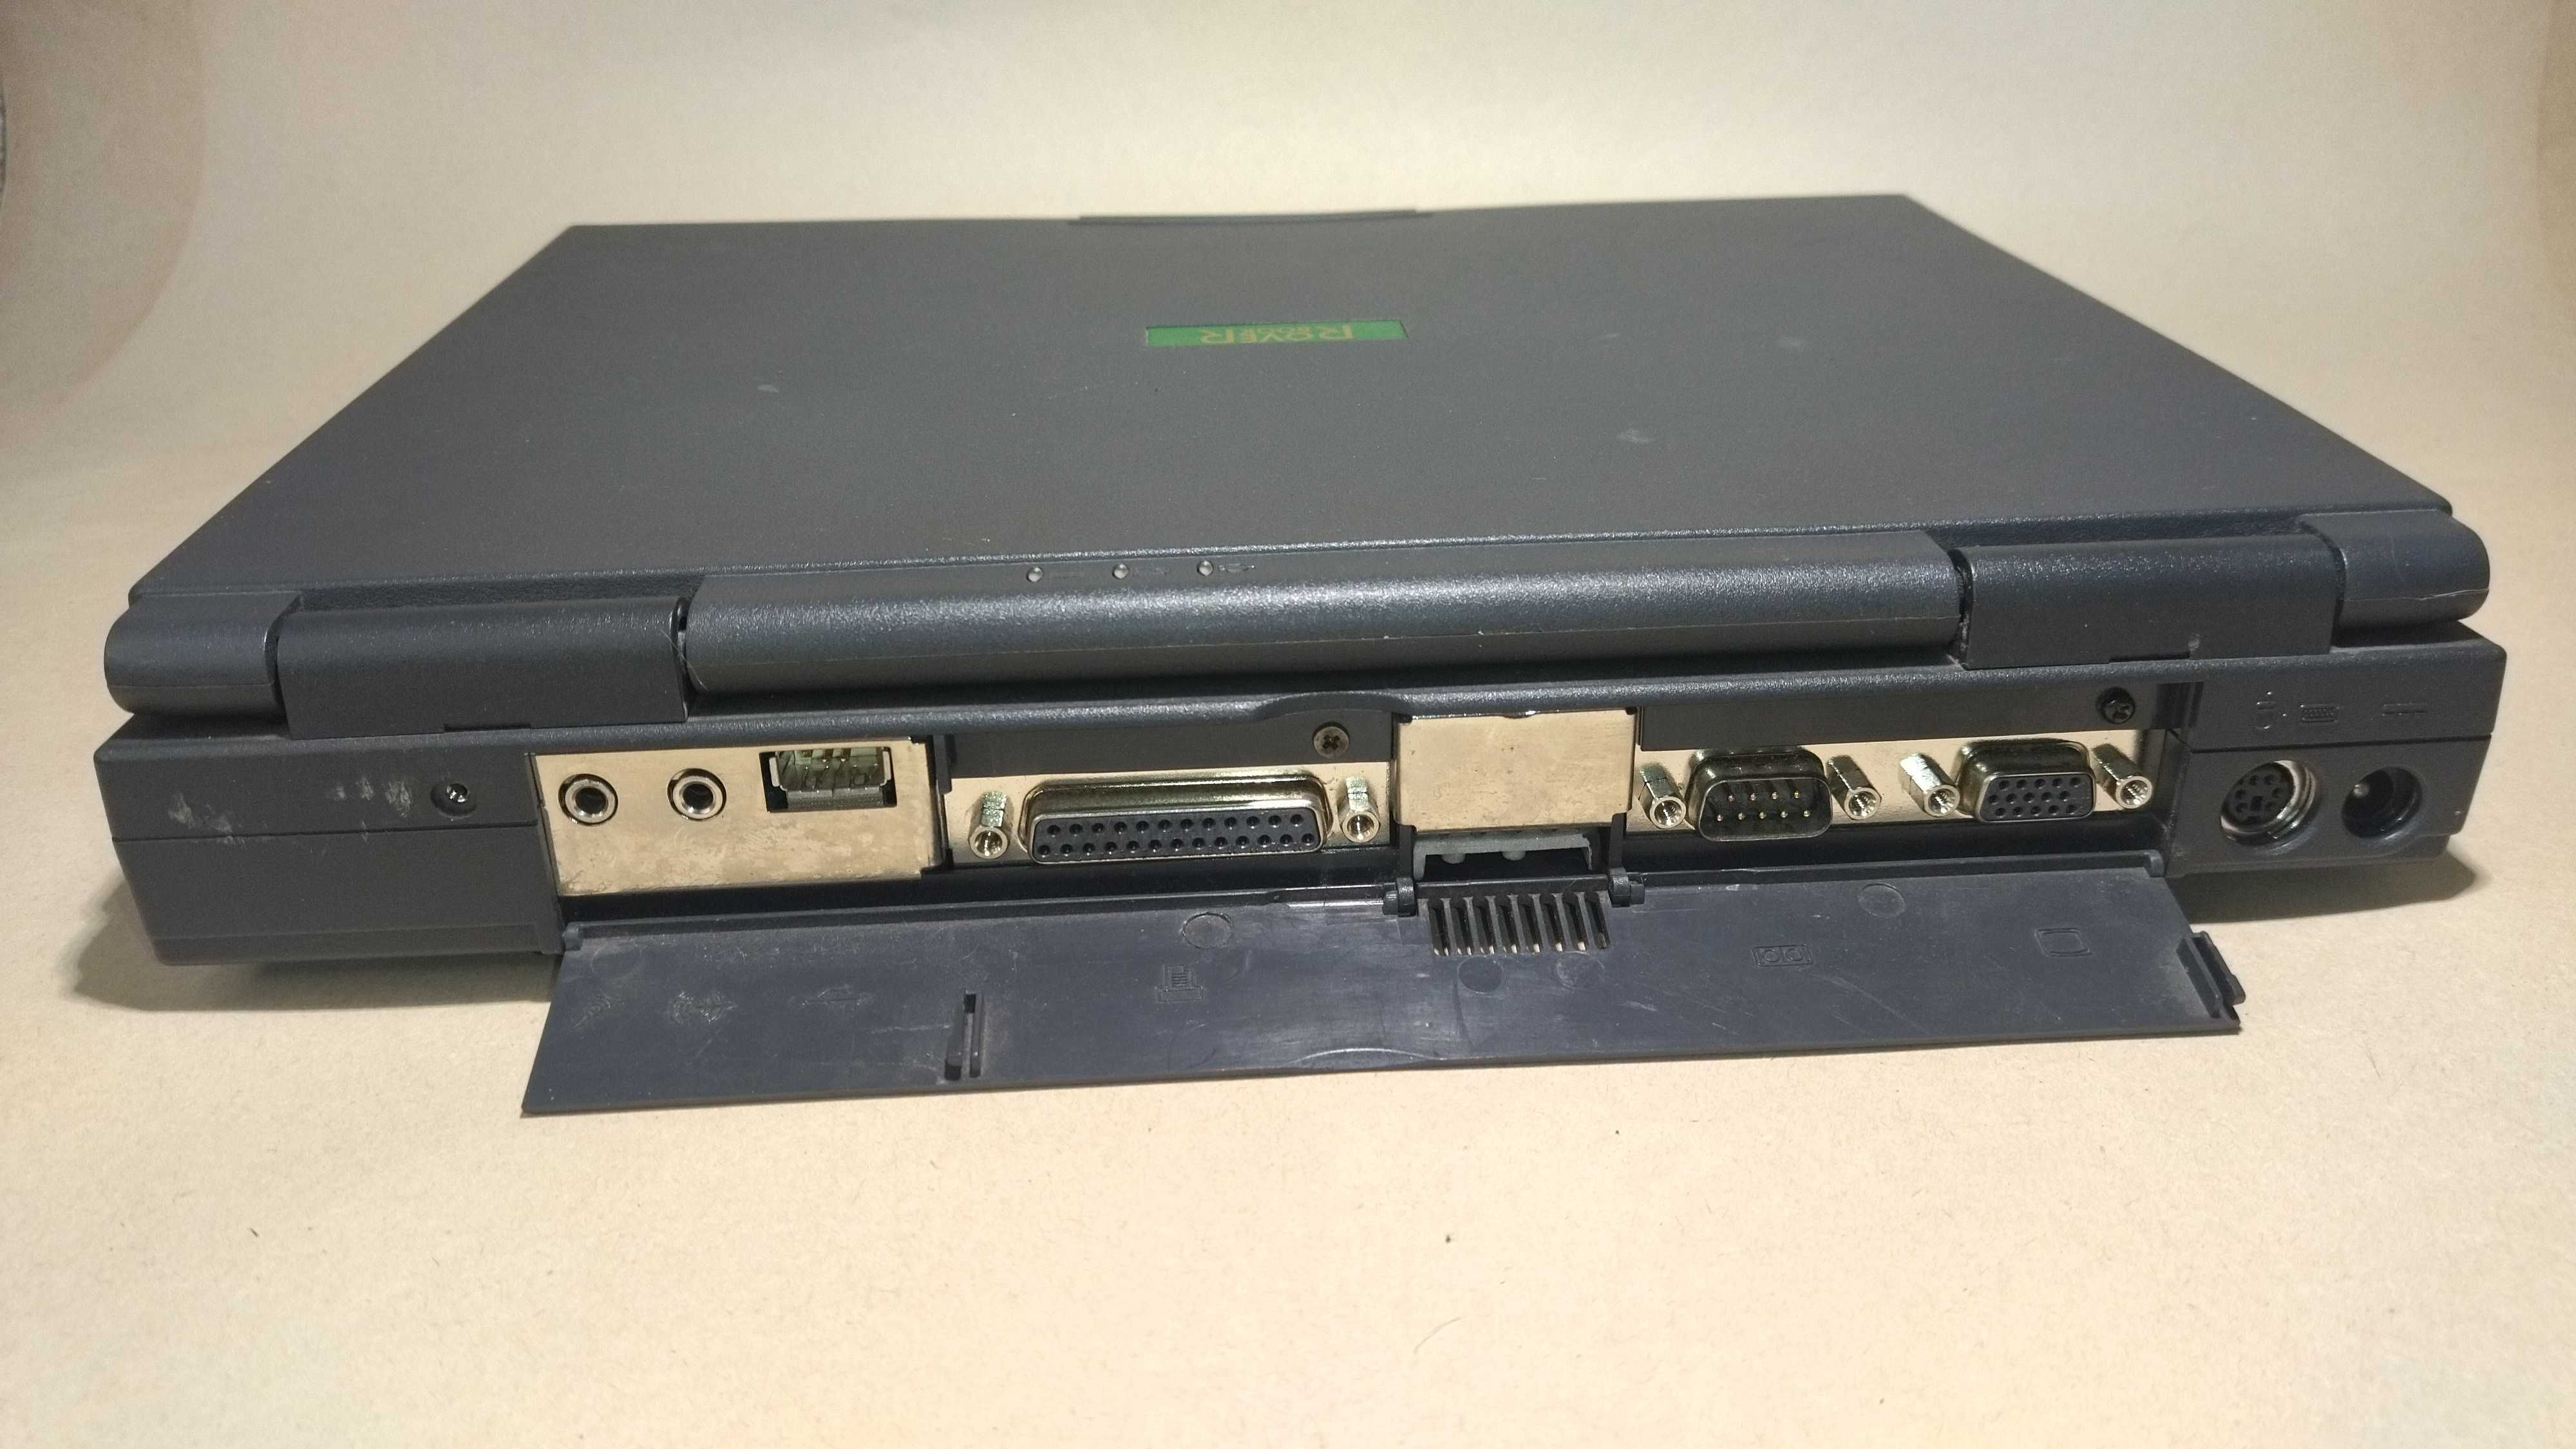 Винтажный ноутбук 90х RoverBook Voyager MT4 1 пентиум, ретро ноут